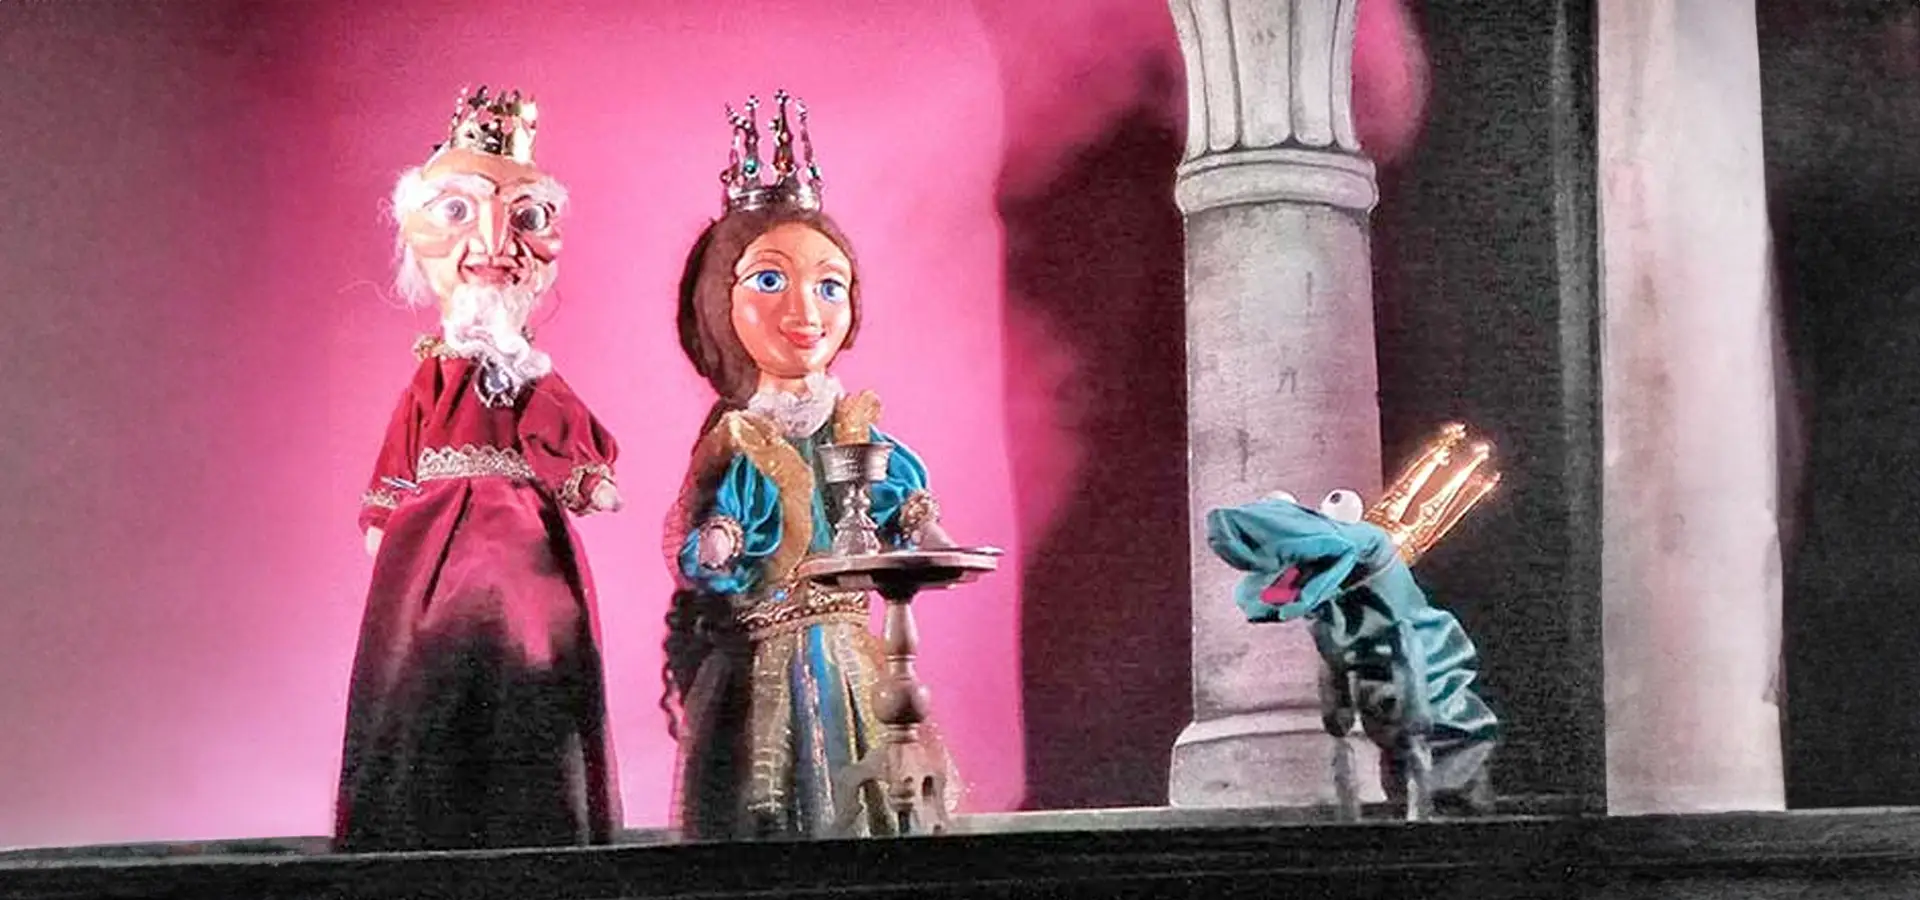 Marionettenkönig, -königin und Froschkönig auf einer Bühne.